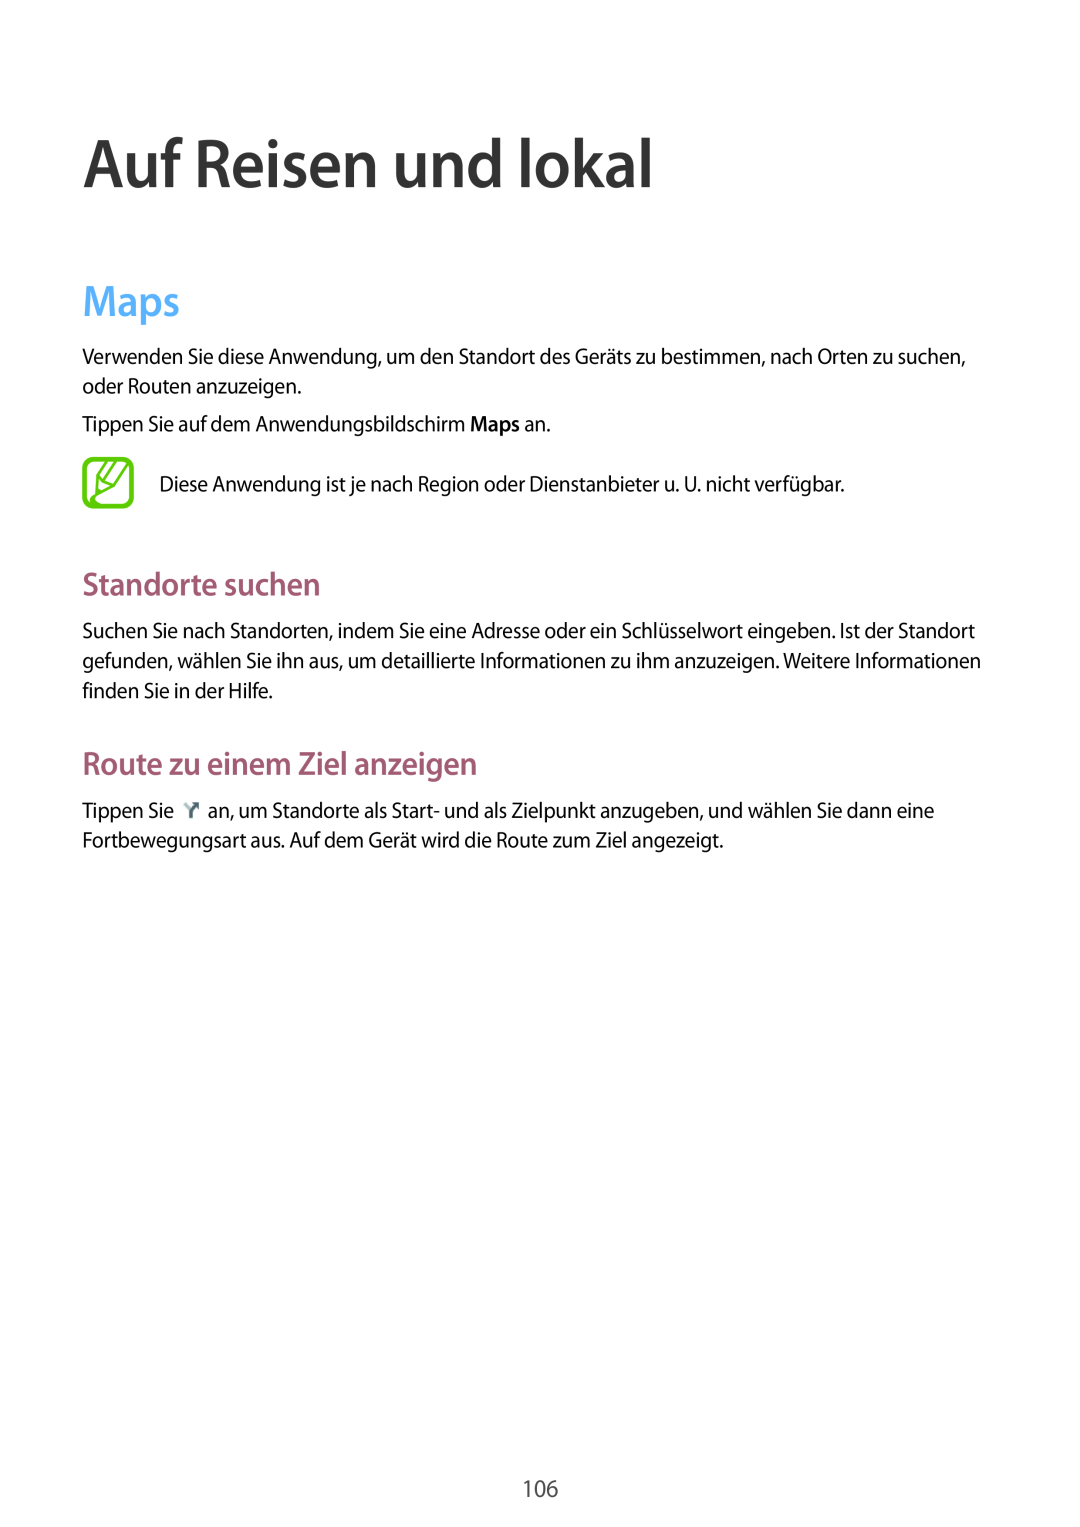 Samsung SM-T3150ZWADBT, SM-T3150ZWAVD2 manual Auf Reisen und lokal, Maps, Standorte suchen, Route zu einem Ziel anzeigen 